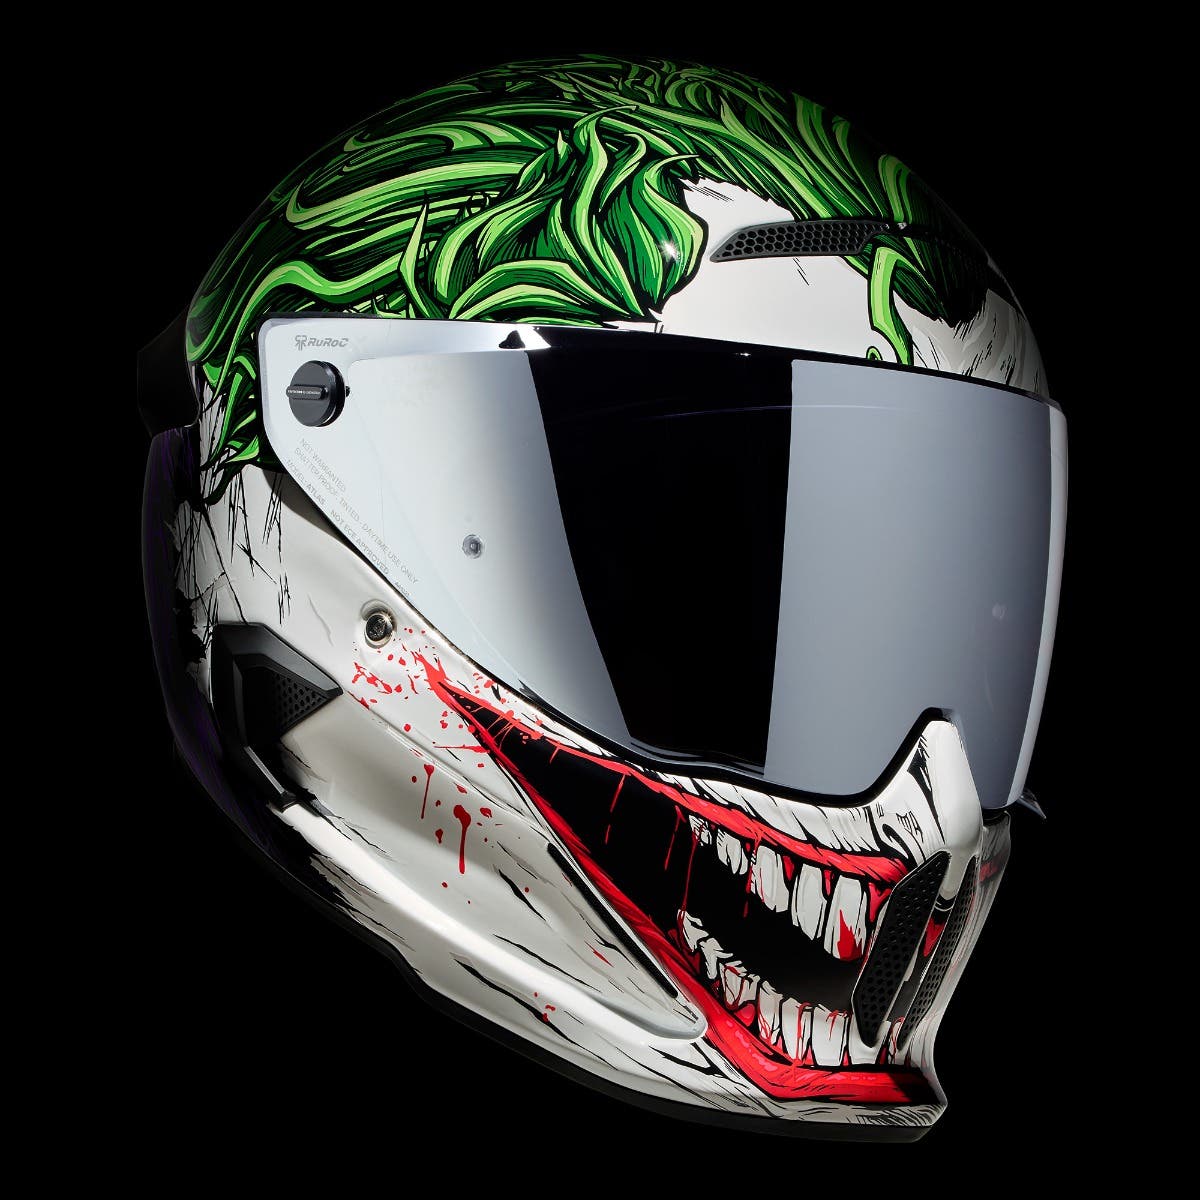 ATLAS 4.0 The Joker - Motorcycle Helmet - Ruroc